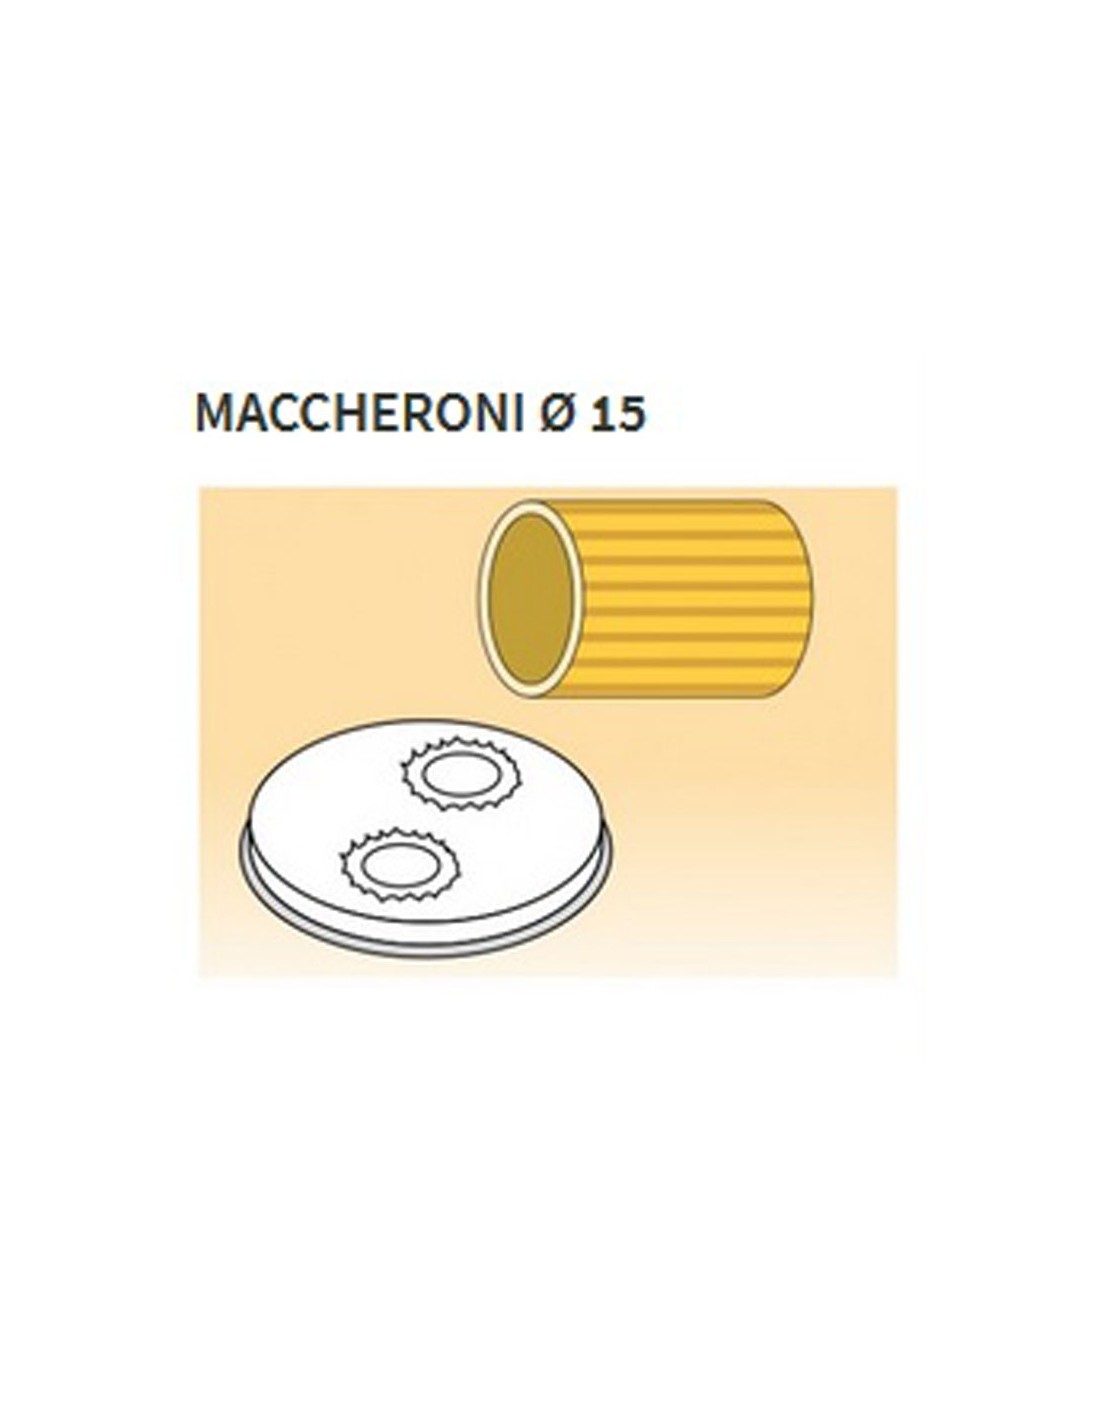 Trafile formati vari in lega ottone - Bronzo - Per macchina pasta fresca modello MPF15 - Maccheroni Ø mm 15